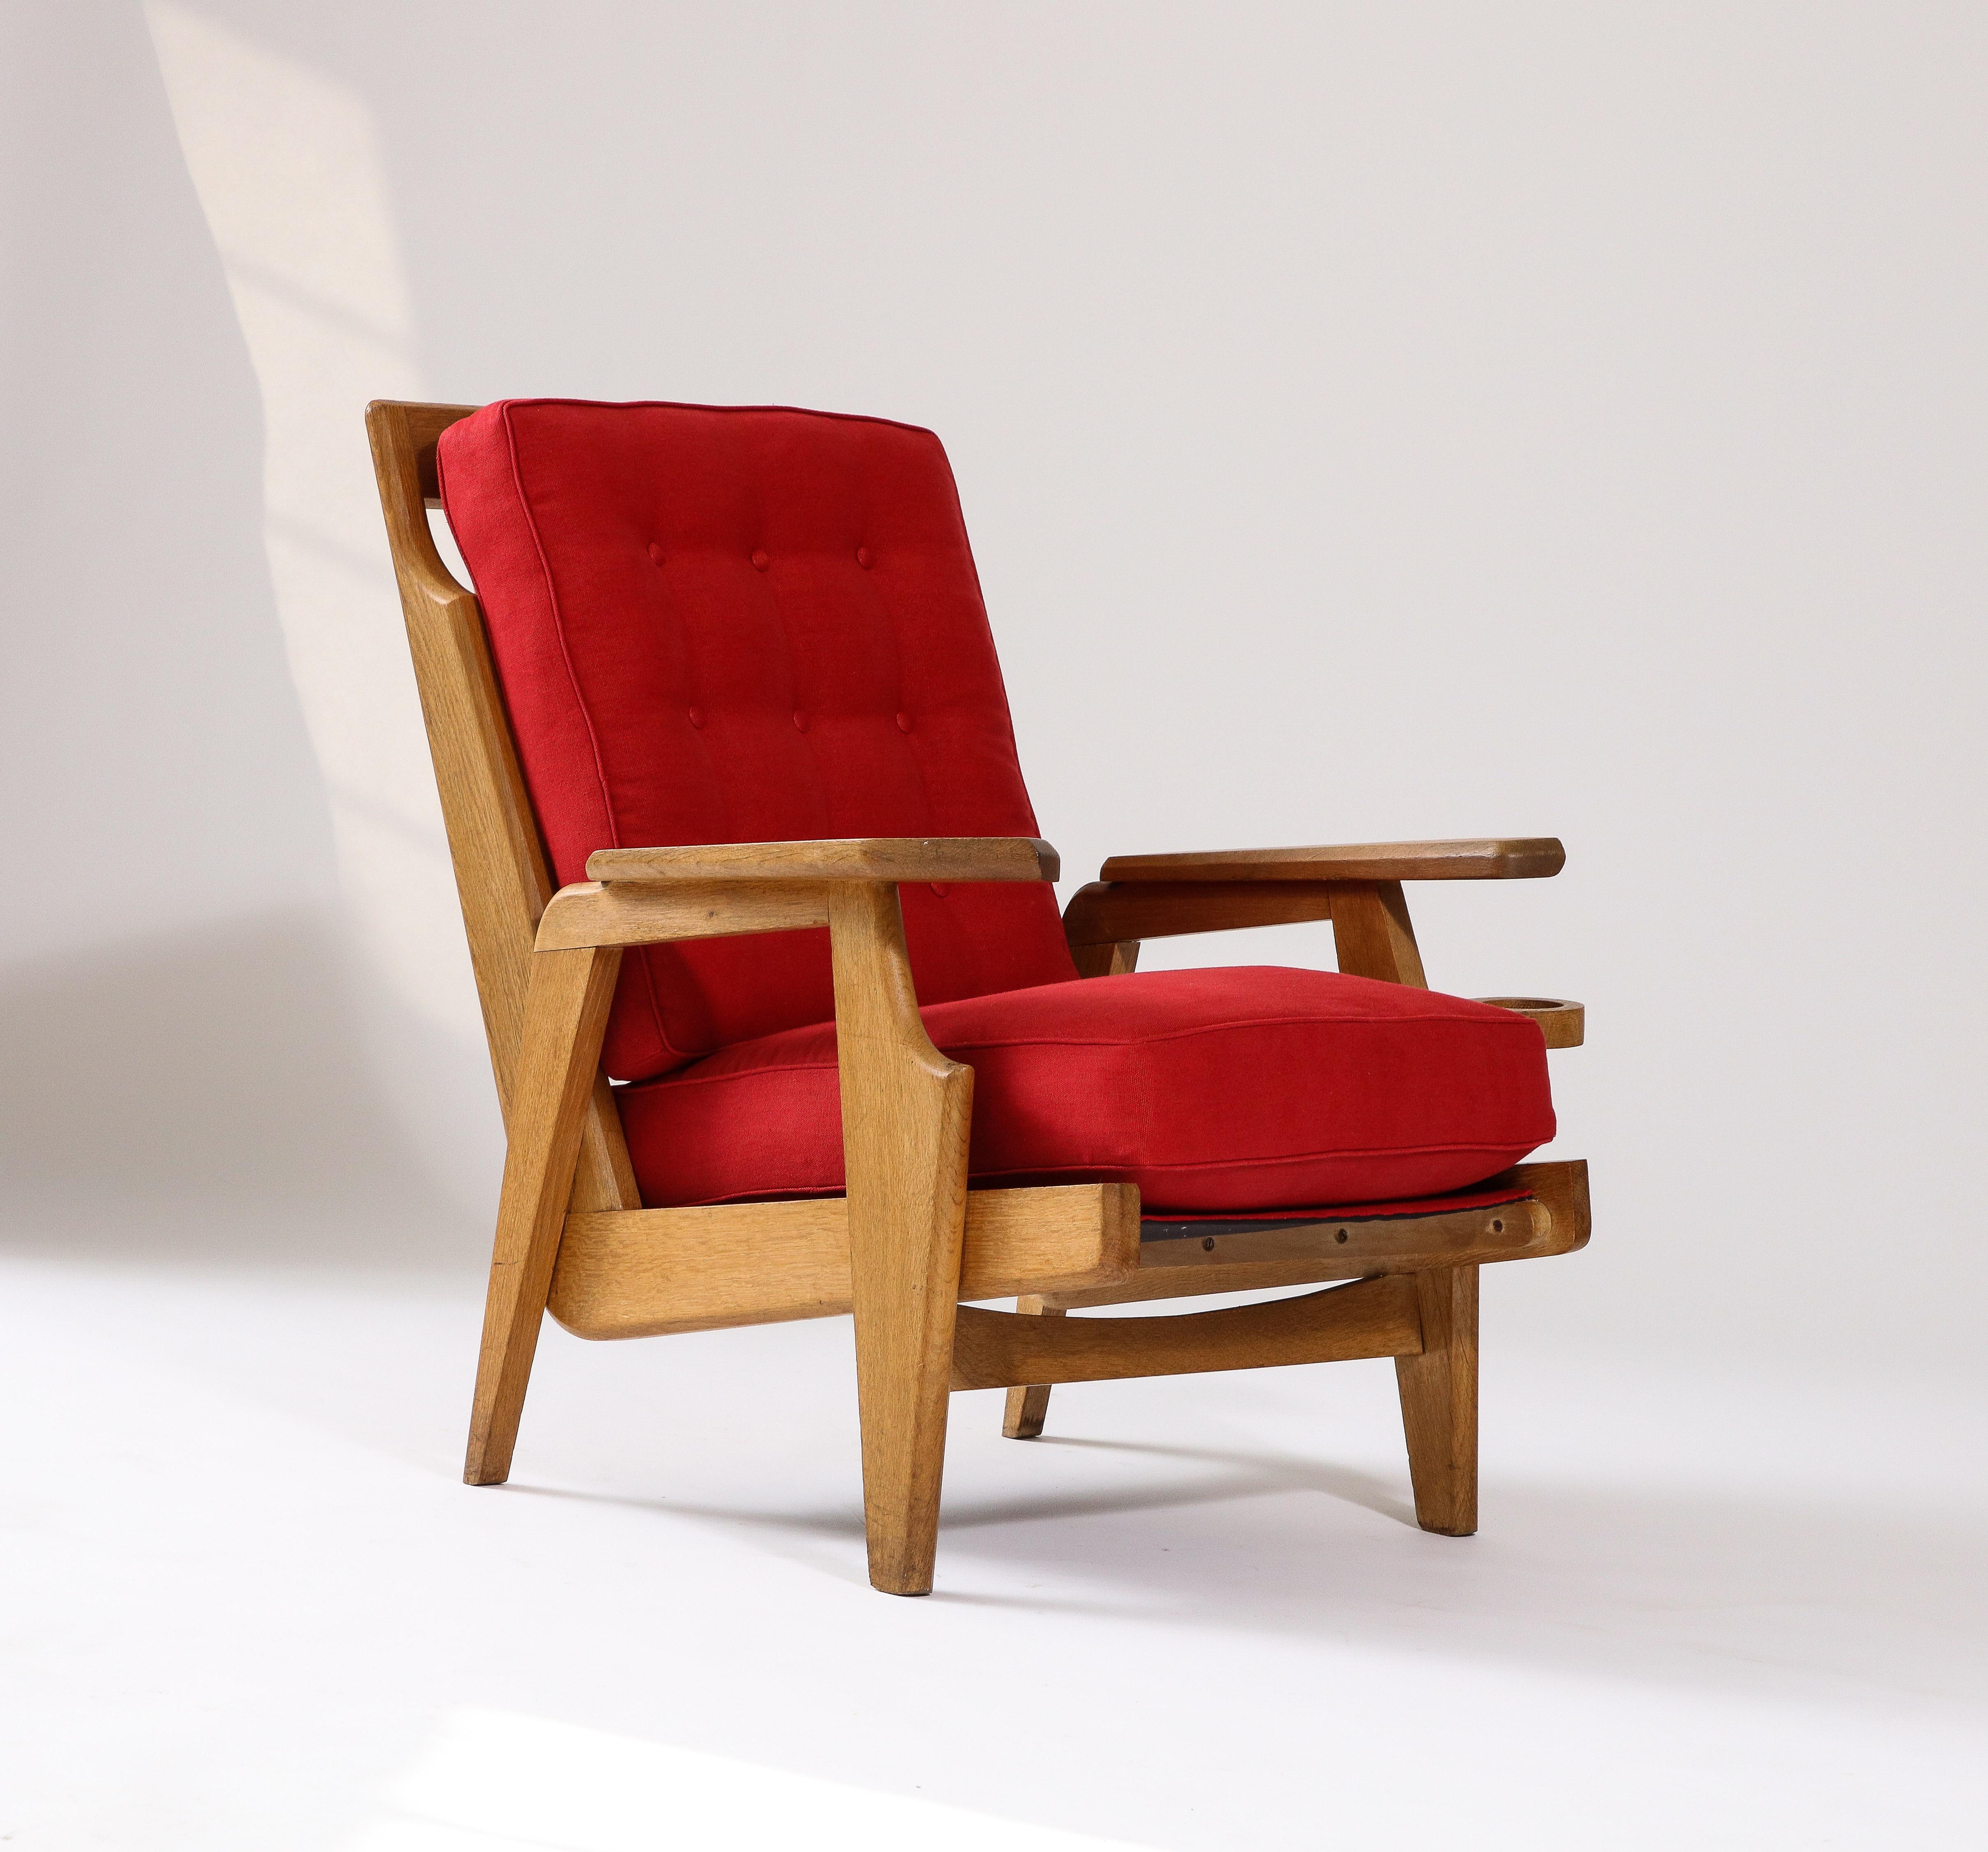 Einzelpreis; zwei verfügbar. 

Sessel von Guillerme et Chambron, mit einer stilvollen 